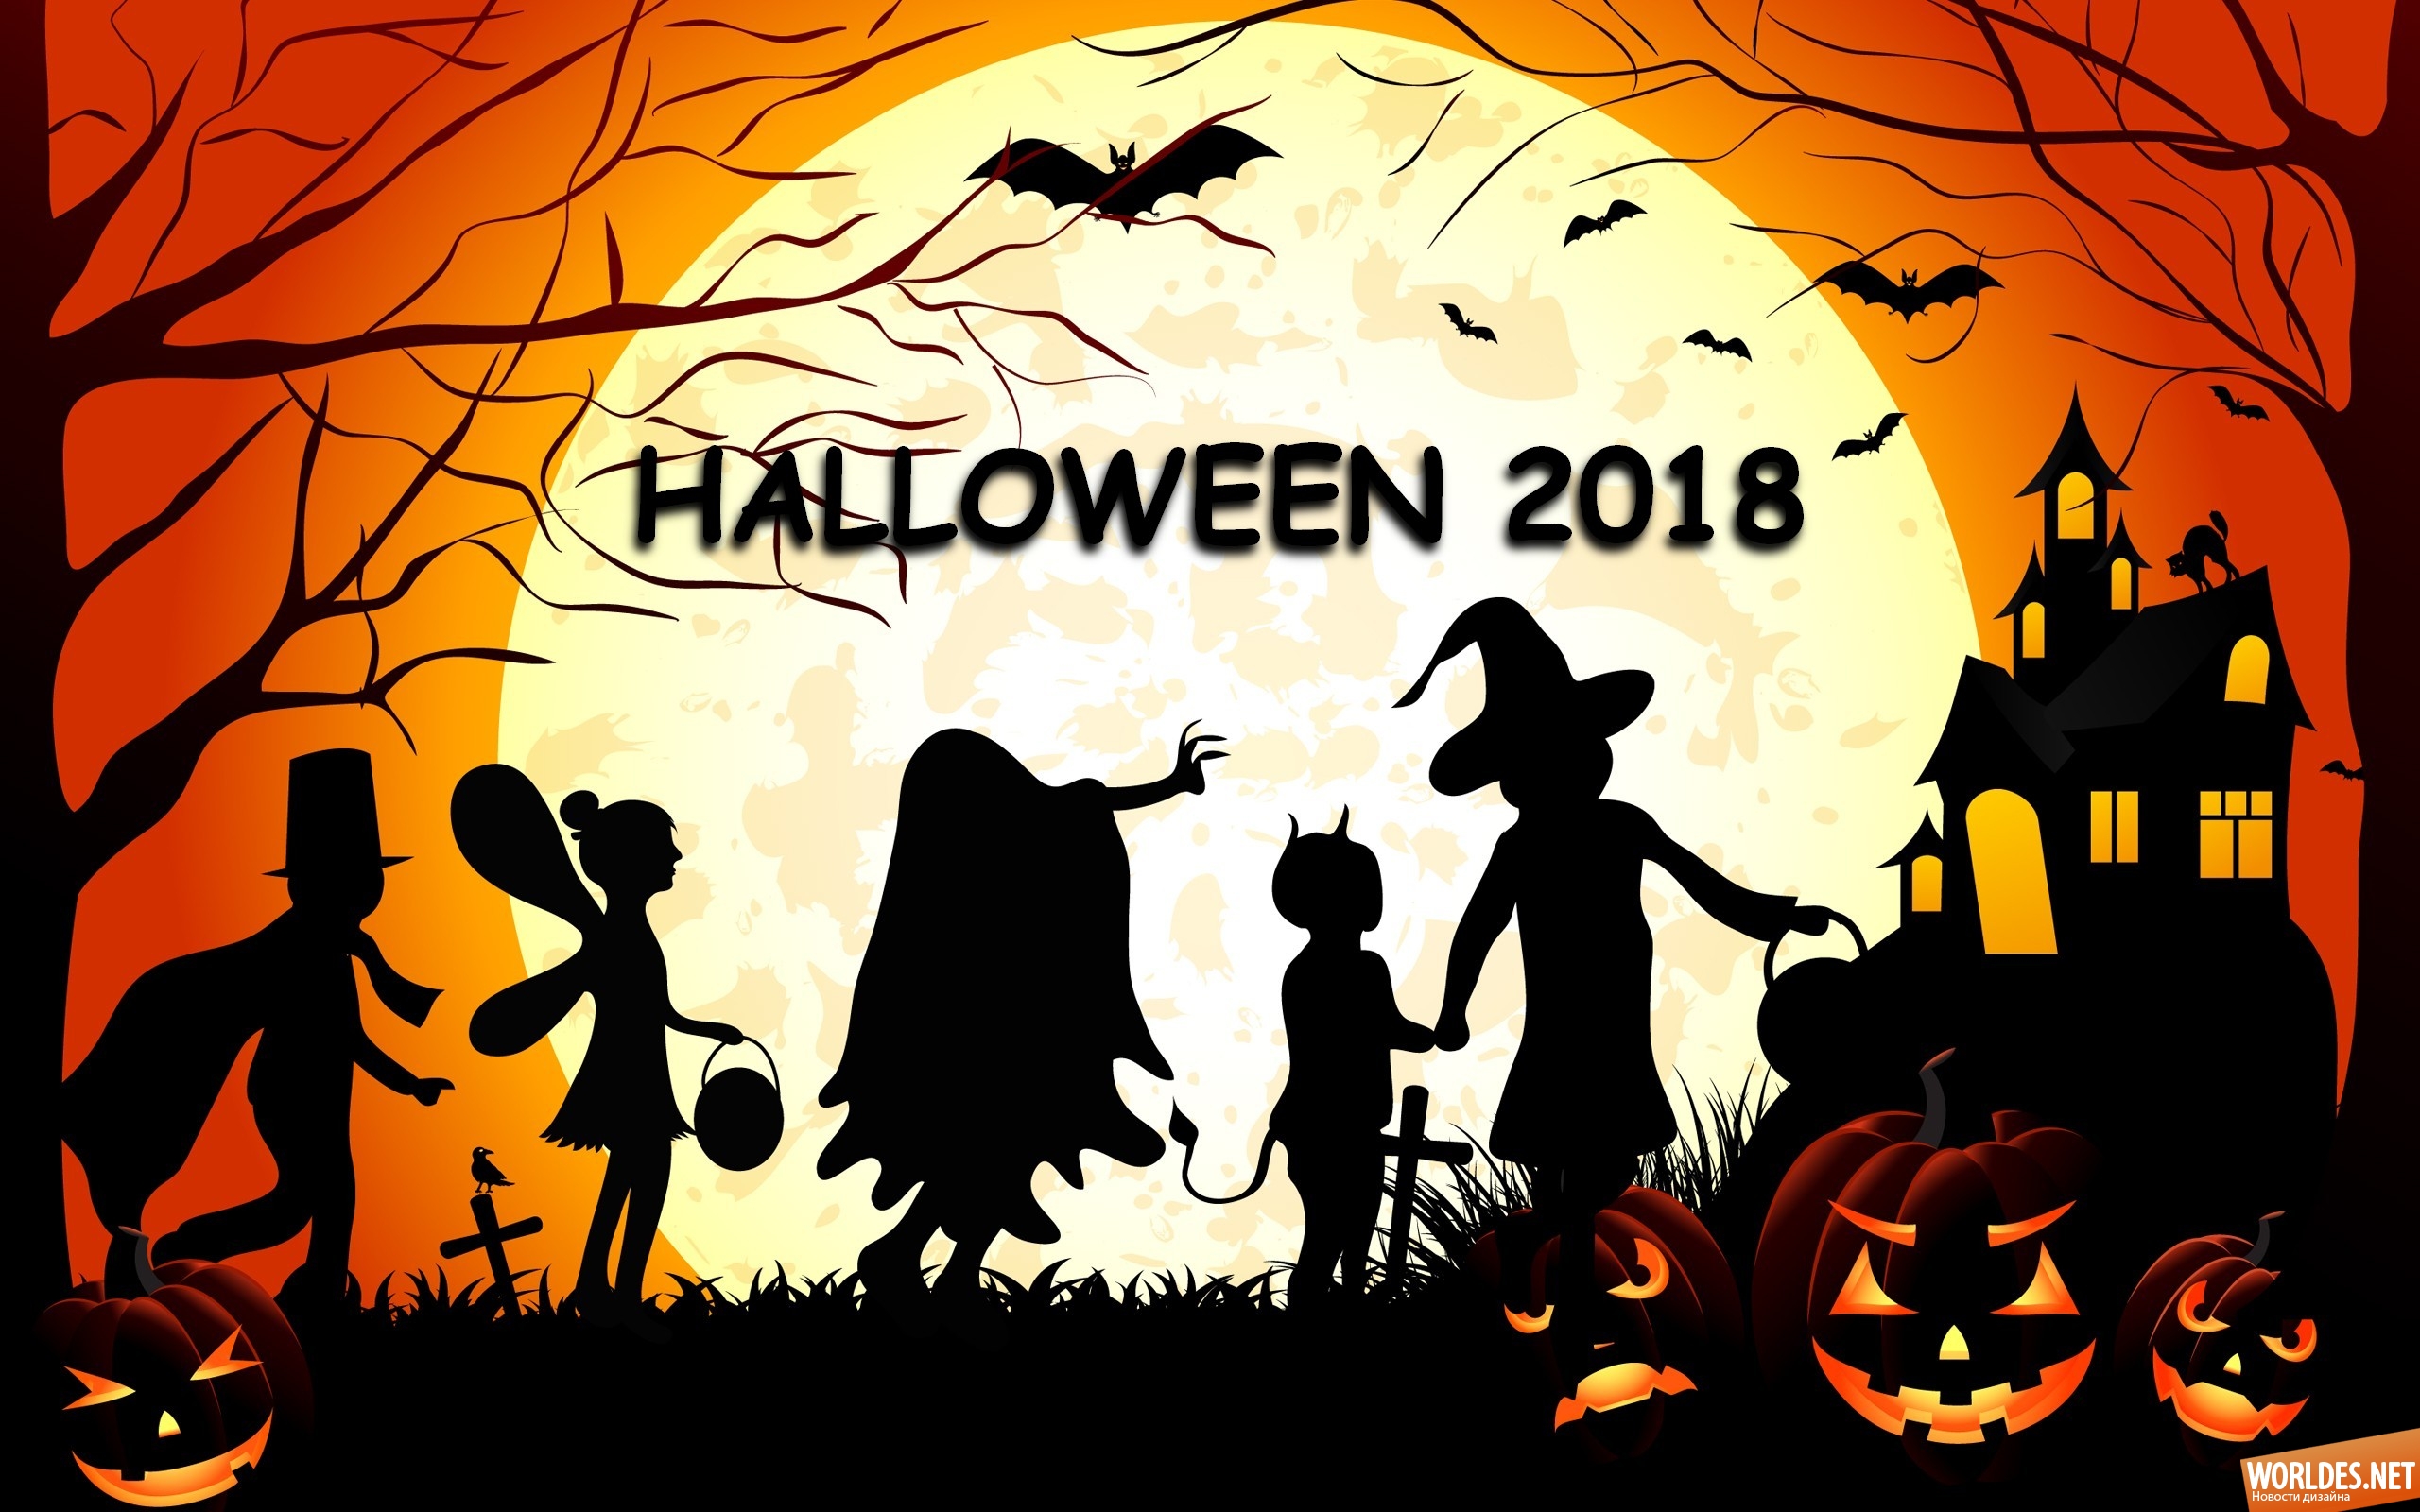 хэллоуин, хэллоуин 2018, какого хэллоуин, праздник хэллоуин, halloween, тыква на хэллоуин, светильник джека, хэллоуин фото